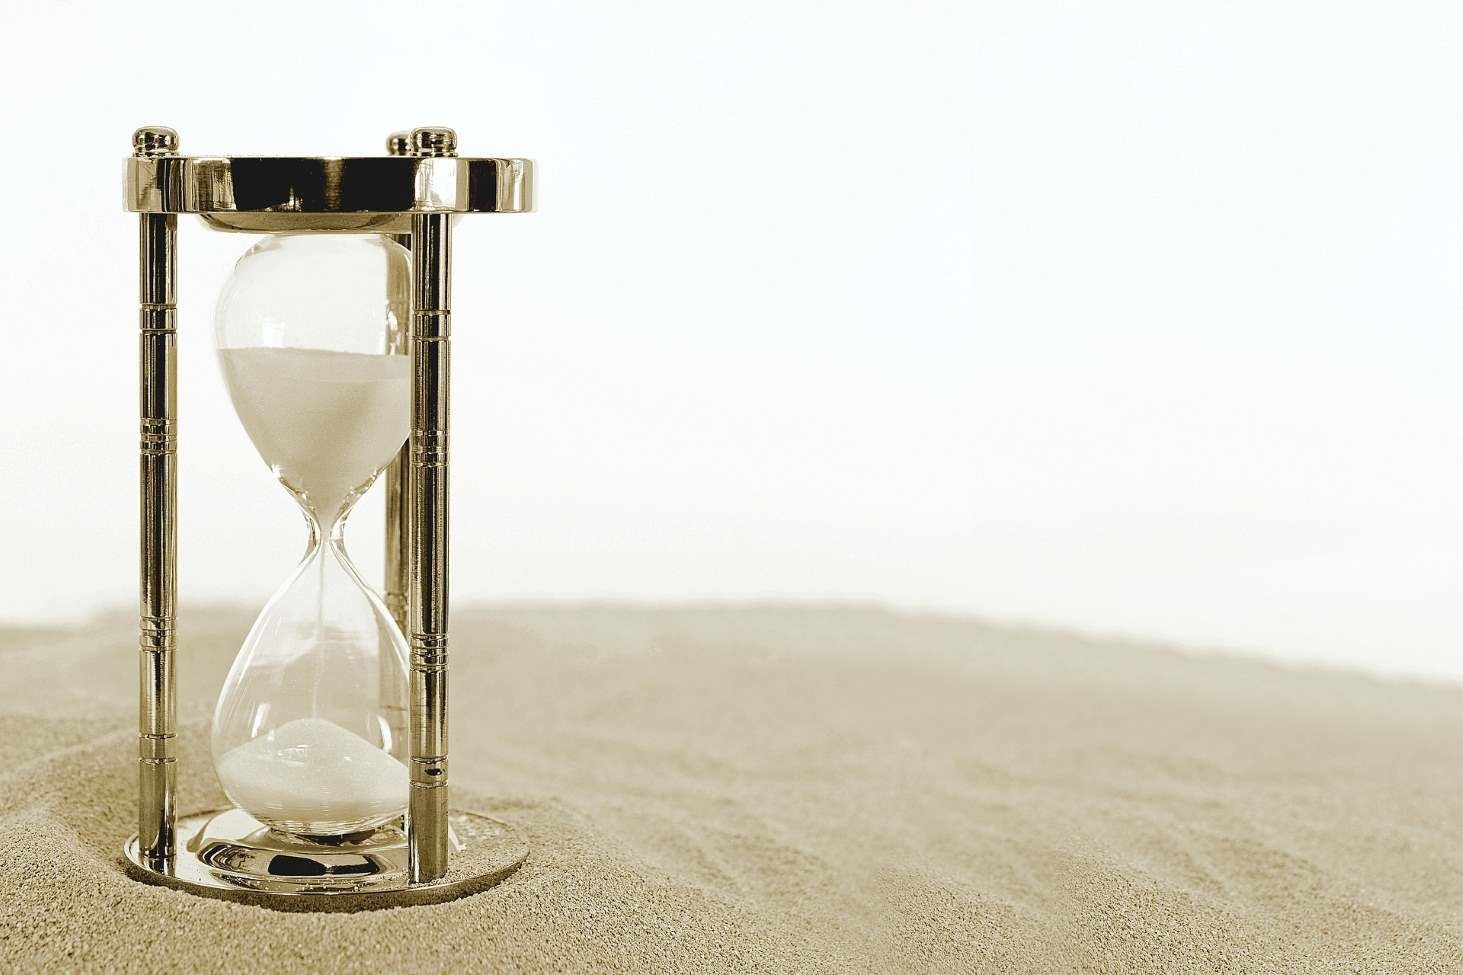 Песочные часы максимальное время. Песочные часы. Песочне час. Песочные часы в песке. Стильные песочные часы.